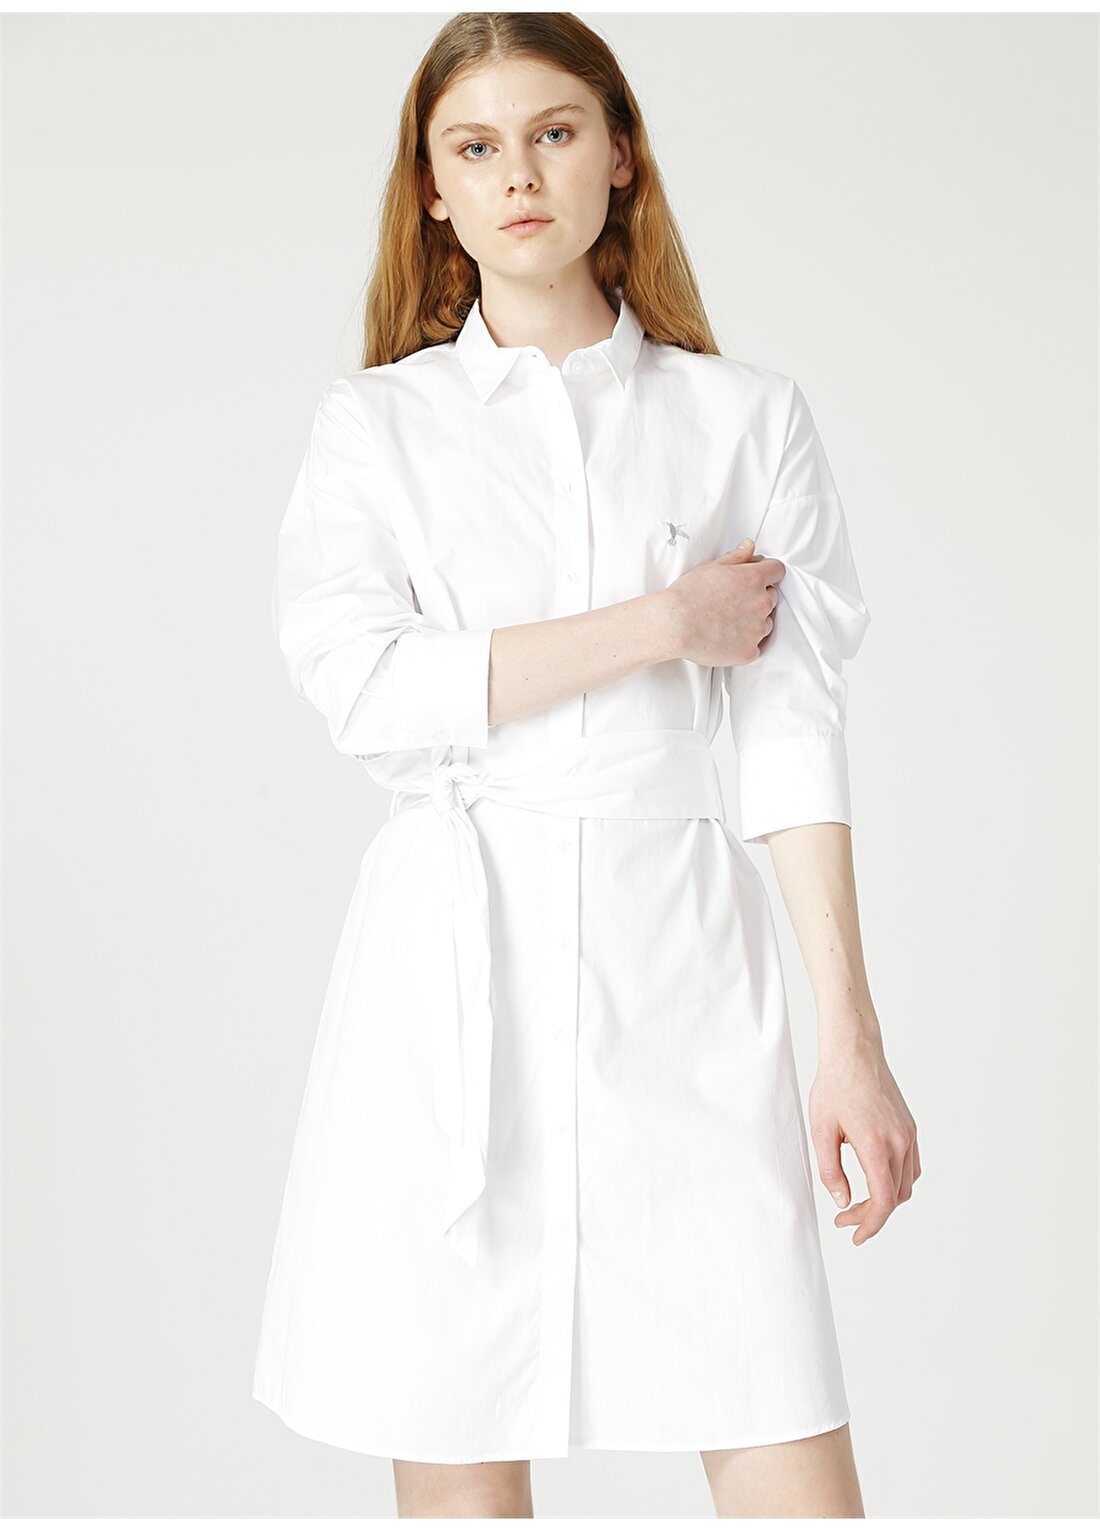 Fabrika Gömlek Yaka Düz Beyaz Kadın Elbise